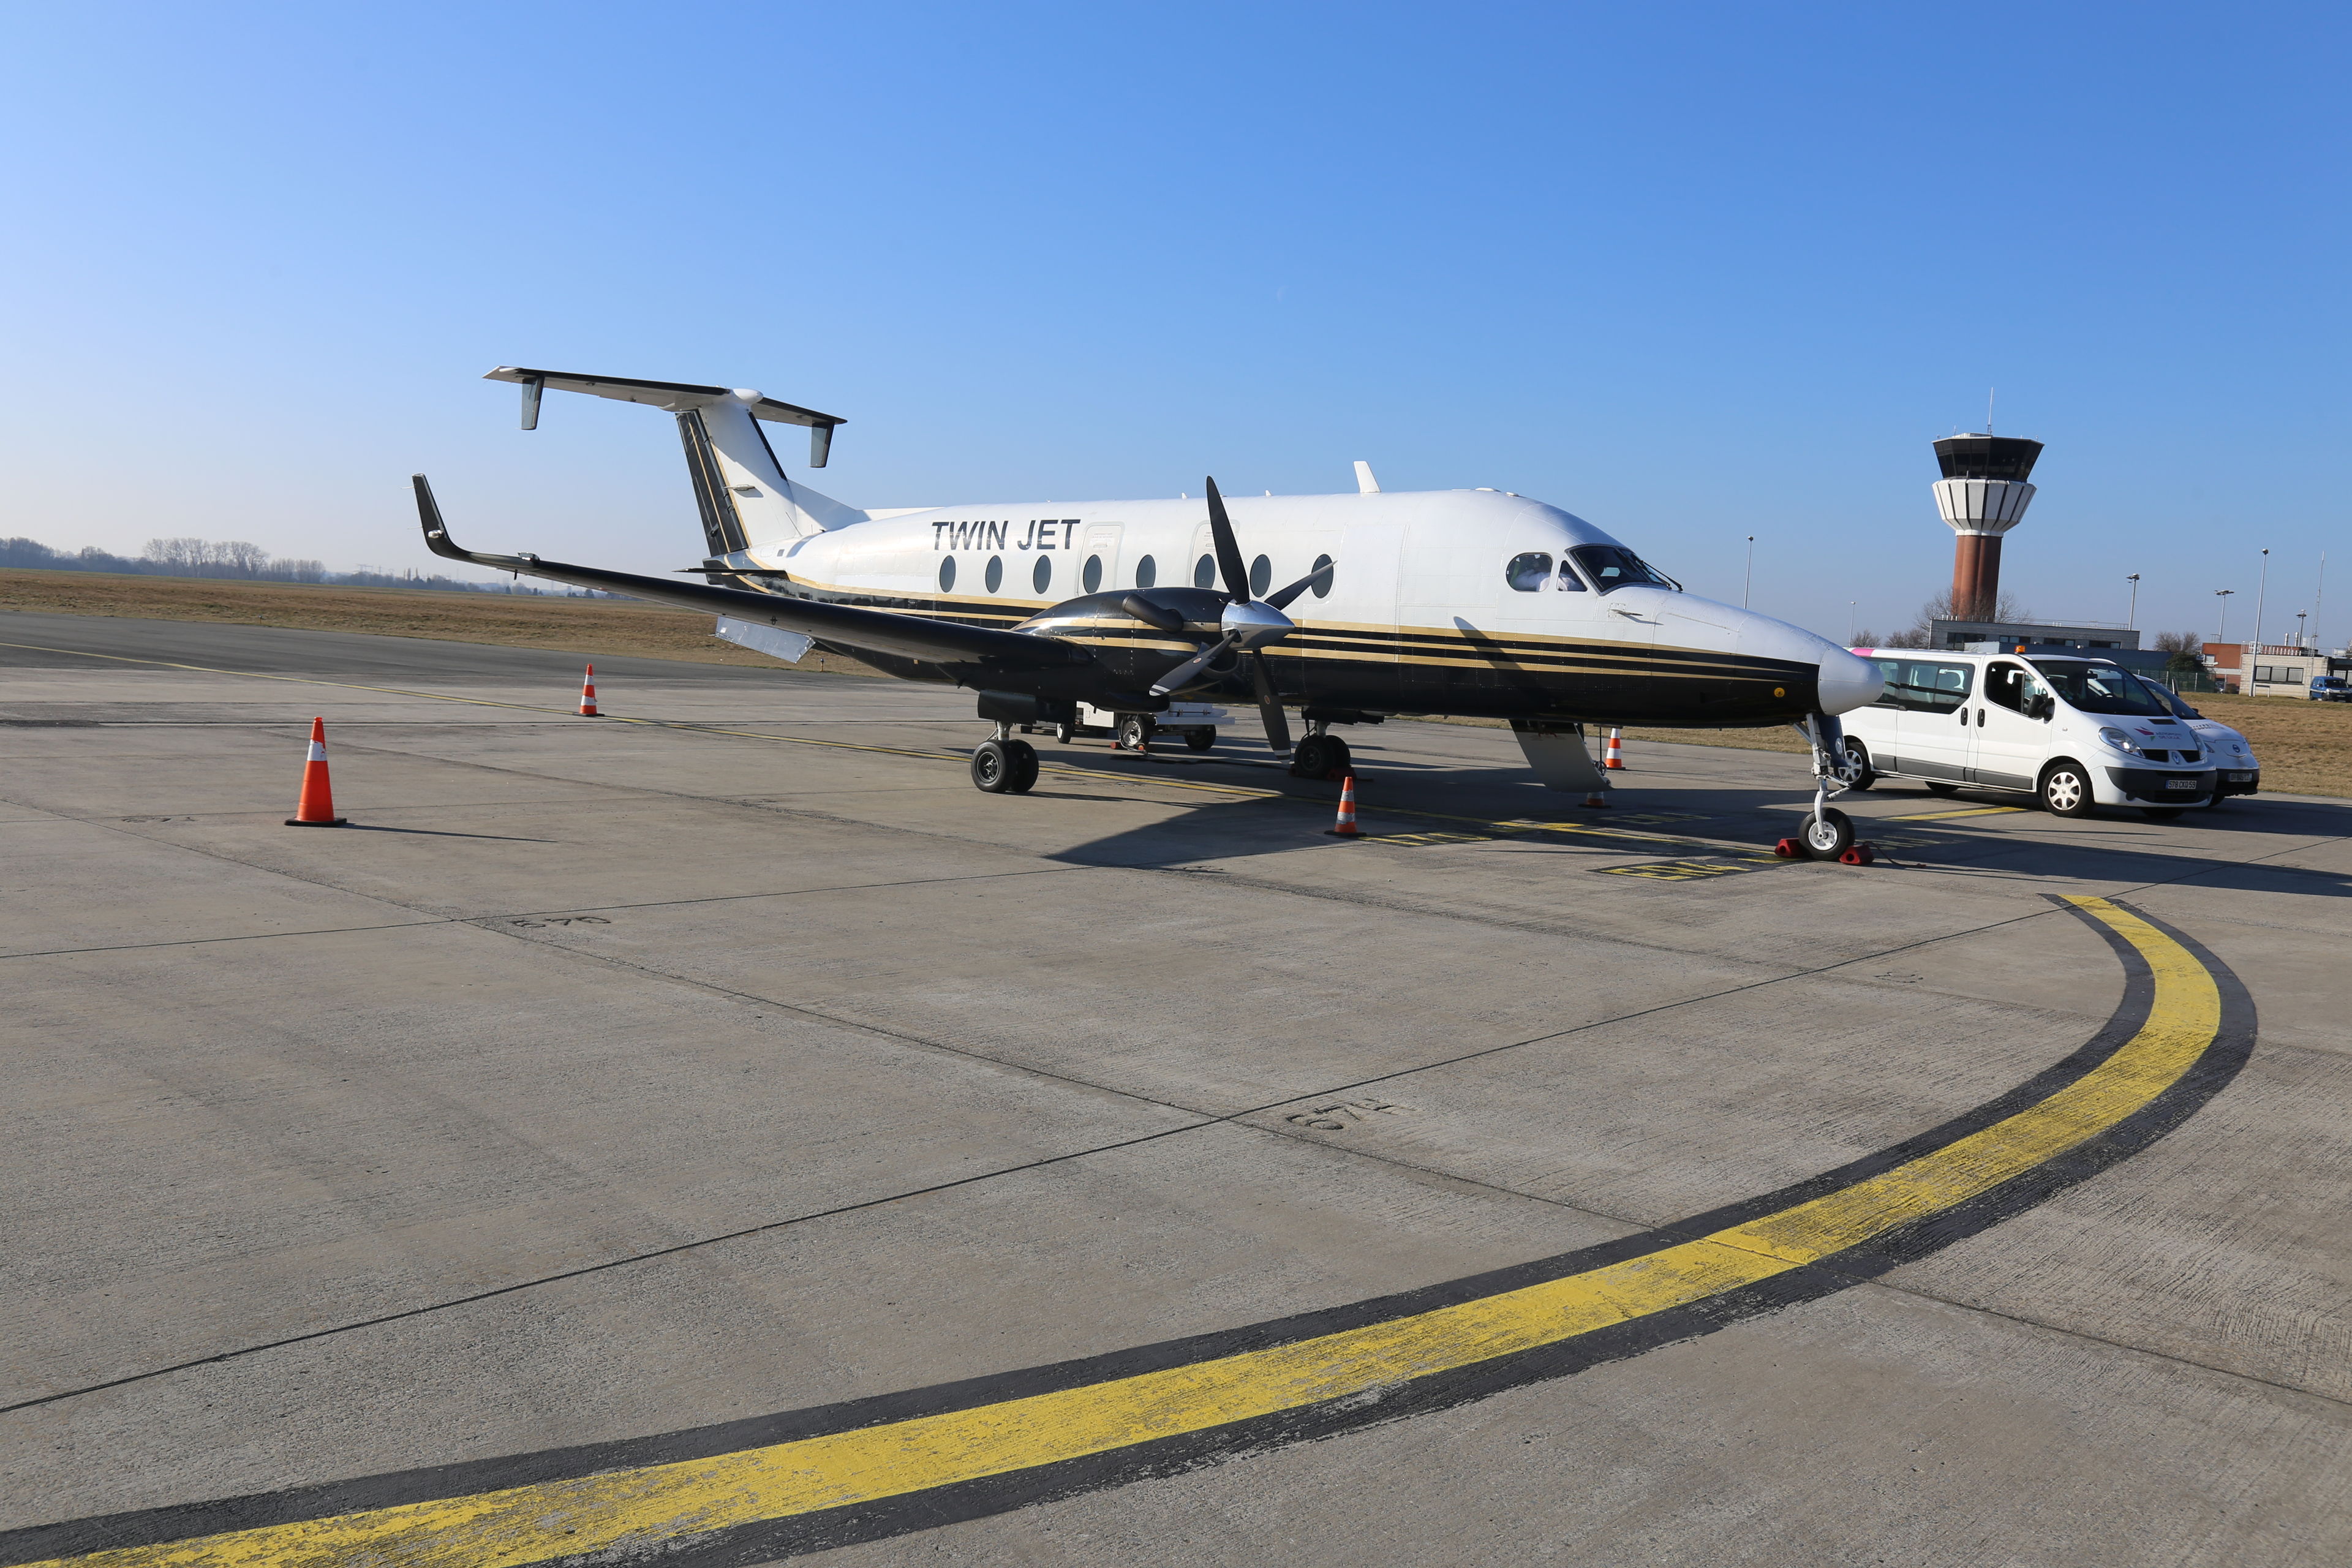 La compagnie Twin Jet desservira Lyon à partir d’avril prochain